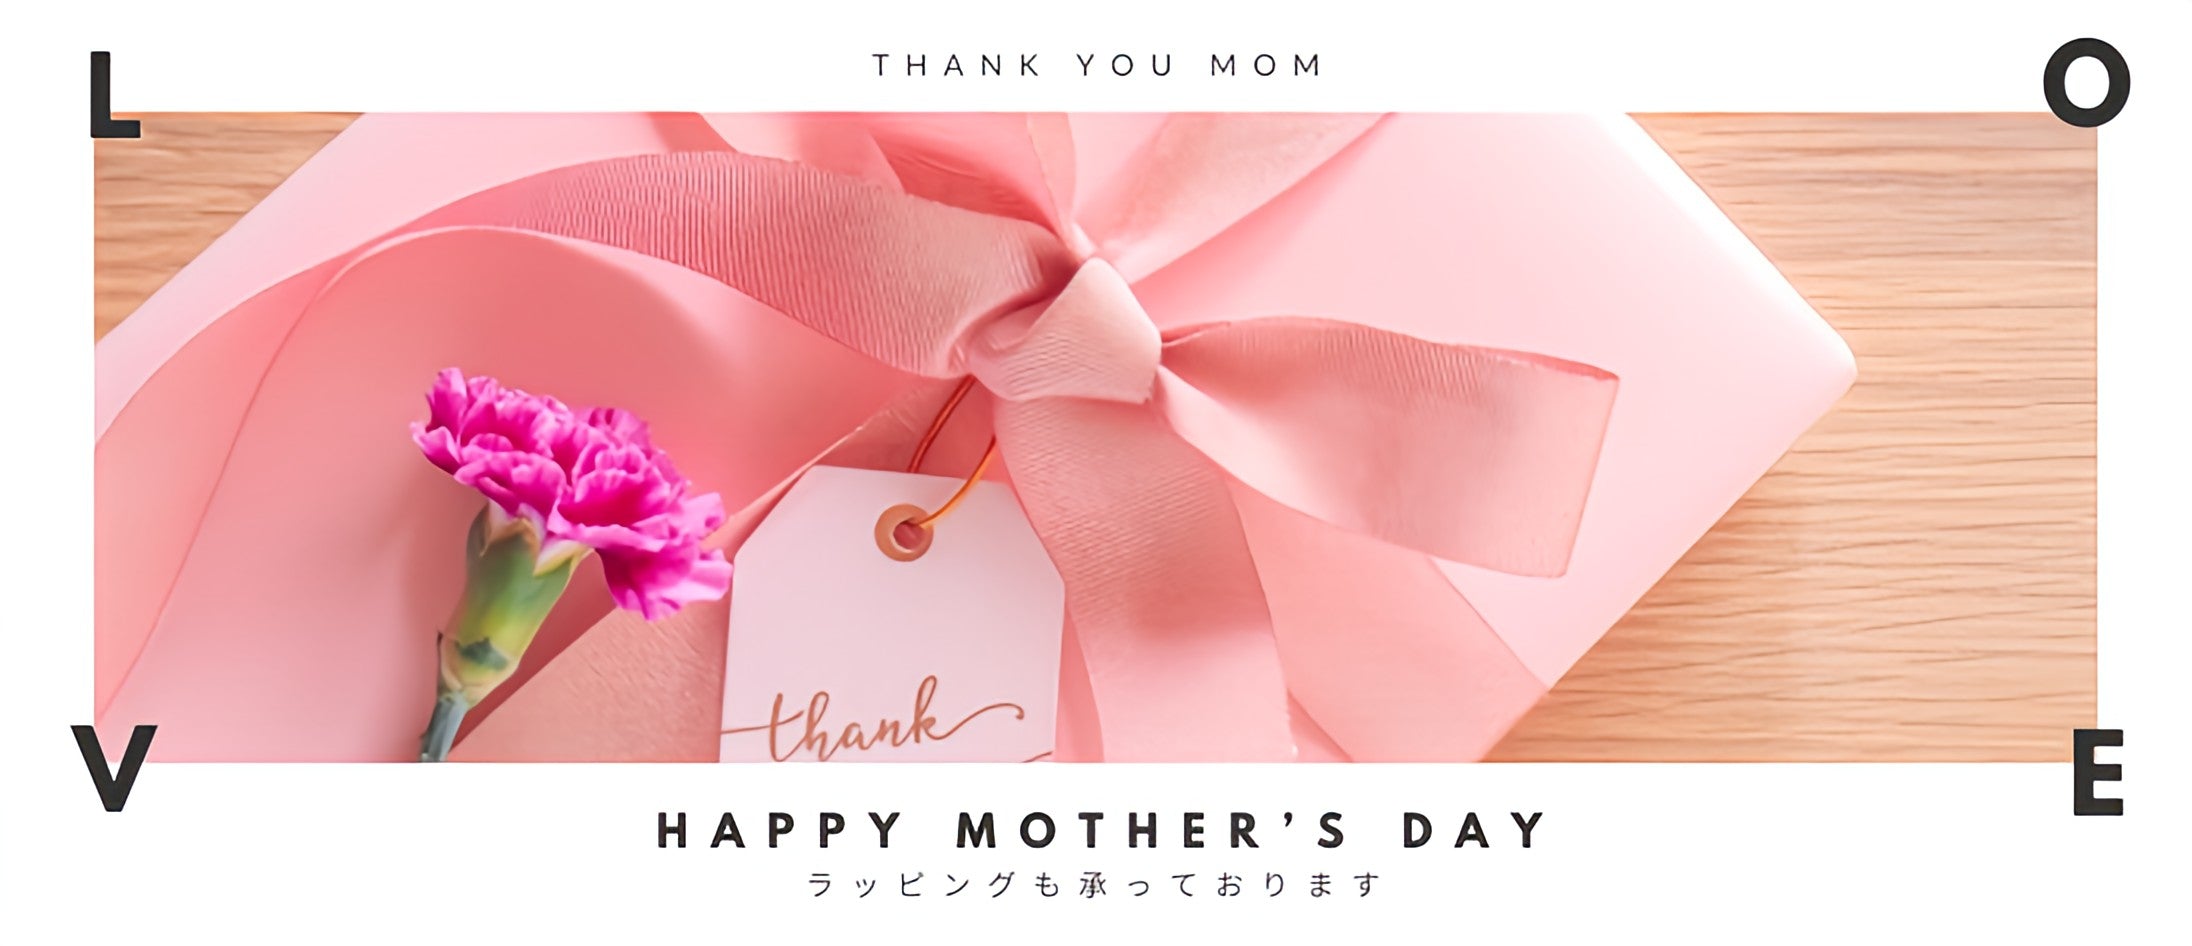 ピンク色の包装とリボンがかかったプレゼントボックス、ピンクのカーネーション、「thank you」と書かれたメッセージタグがうつった写真が真ん中に写っています。その写真を挟むように上下にそれぞれ「THANK YOU MOM」「HAPPY MOTHER'S DAY ラッピングも承っております」と記載されています。下記は関連するキーワードになります。母の日 母の日ギフト 美濃和紙タオル 美濃和紙靴下 和紙タオル 和紙靴下 和紙雑貨 生活雑貨 自然素材 ちょっといいもの こだわり 日本製 国内生産 和紙アクセサリー おすすめ 特別 人気 美濃和紙 和紙 松久永助紙店 オンラインショップ ラッピング可 ギフト包装可